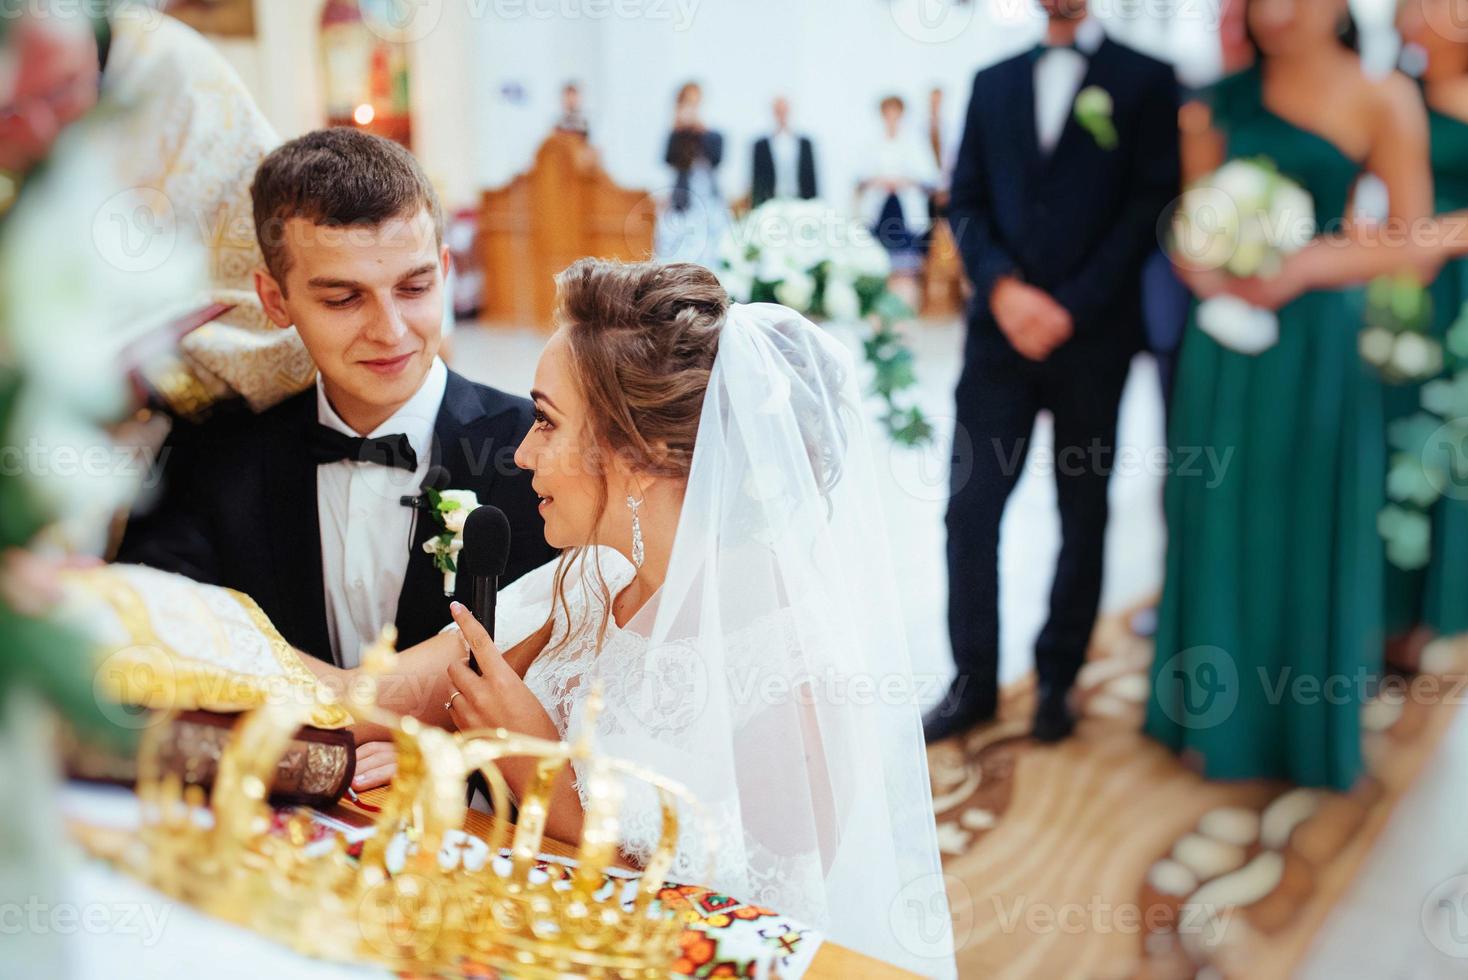 marié mettant une bague au doigt de la mariée pendant le mariage photo